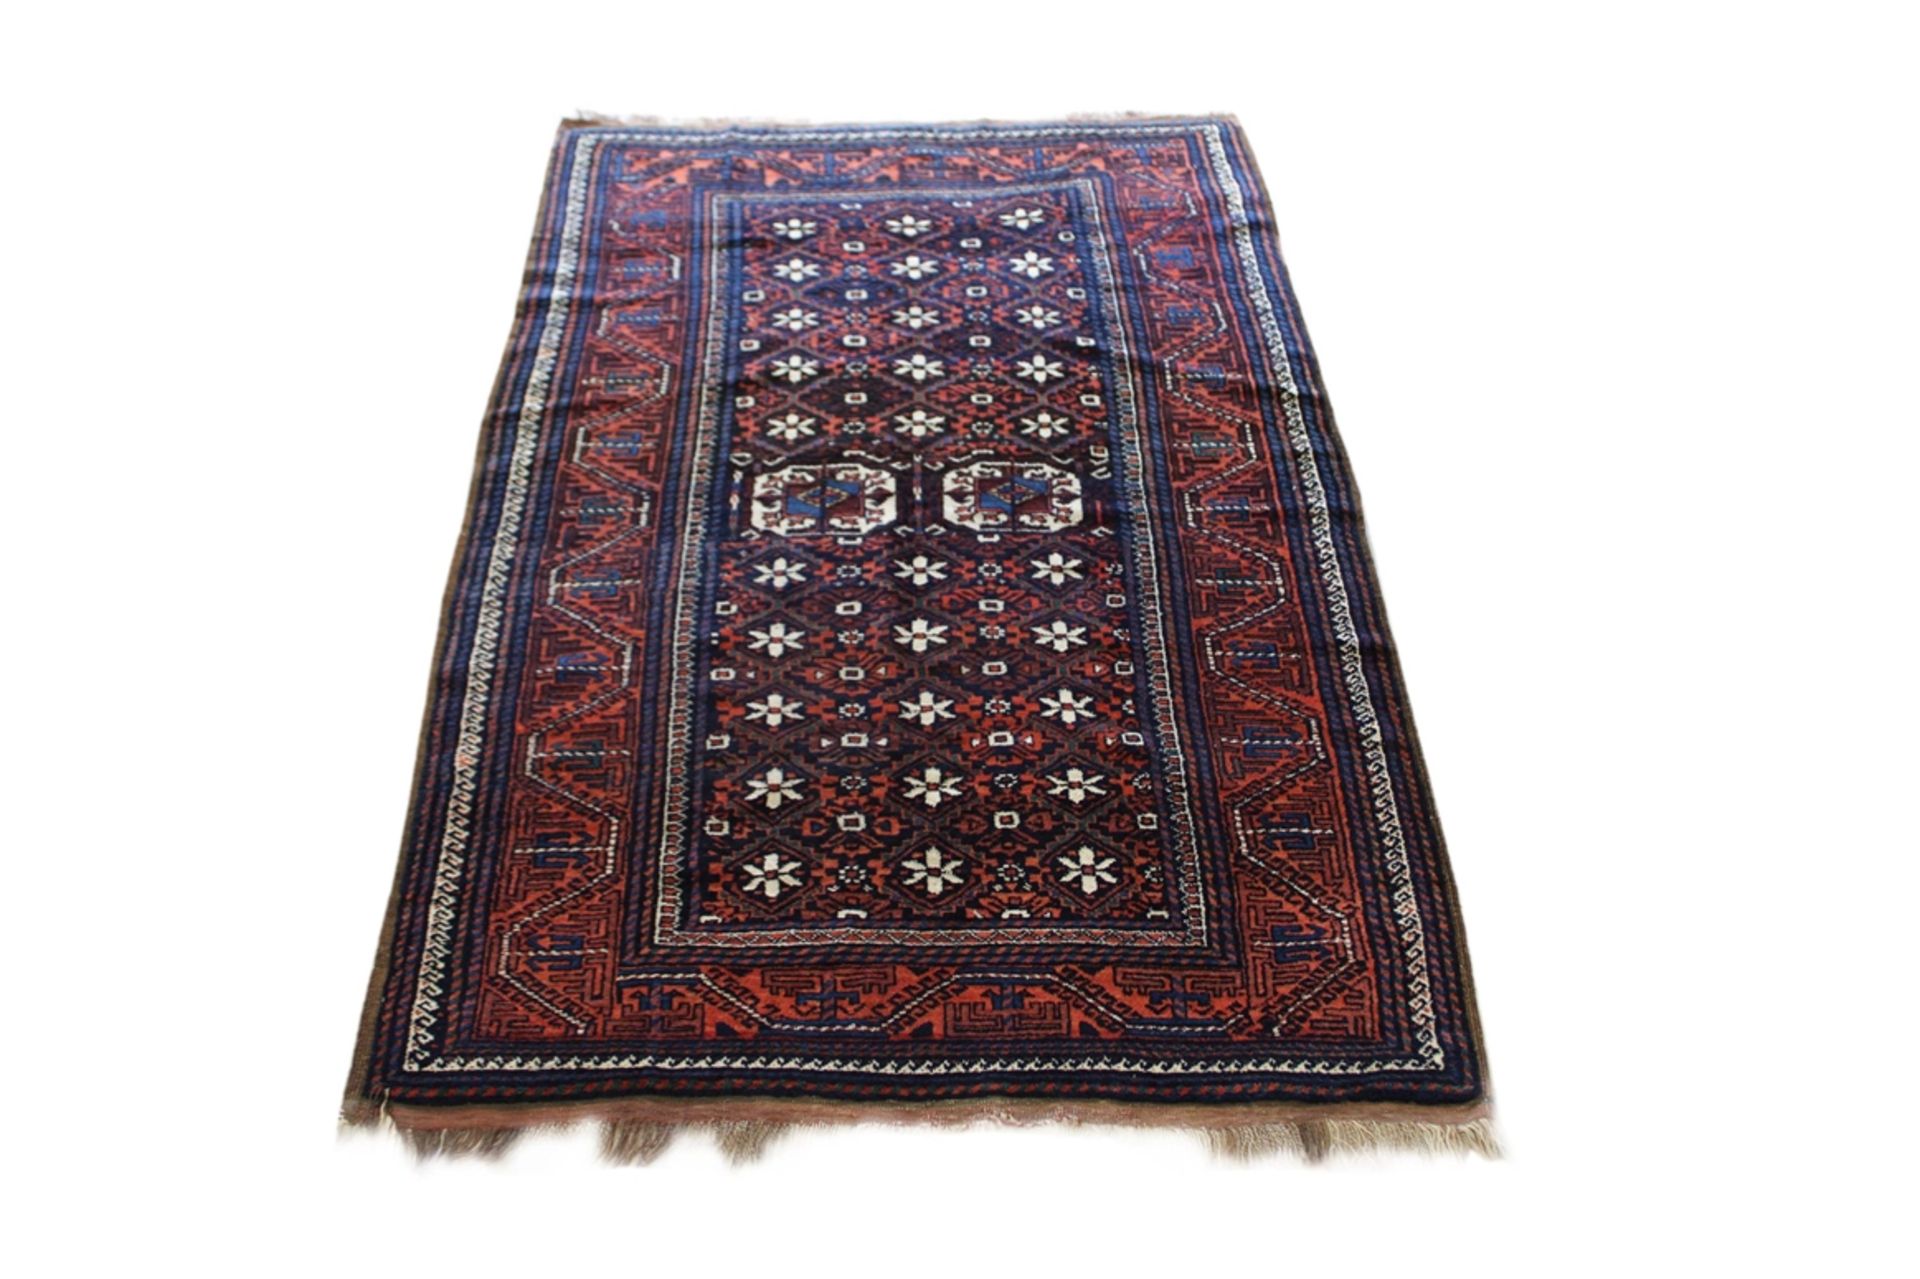 Belutsch Teppich, Maße: 237 x 141 cm. Guter Zustand, Abnutzungsspuren an den Kanten.